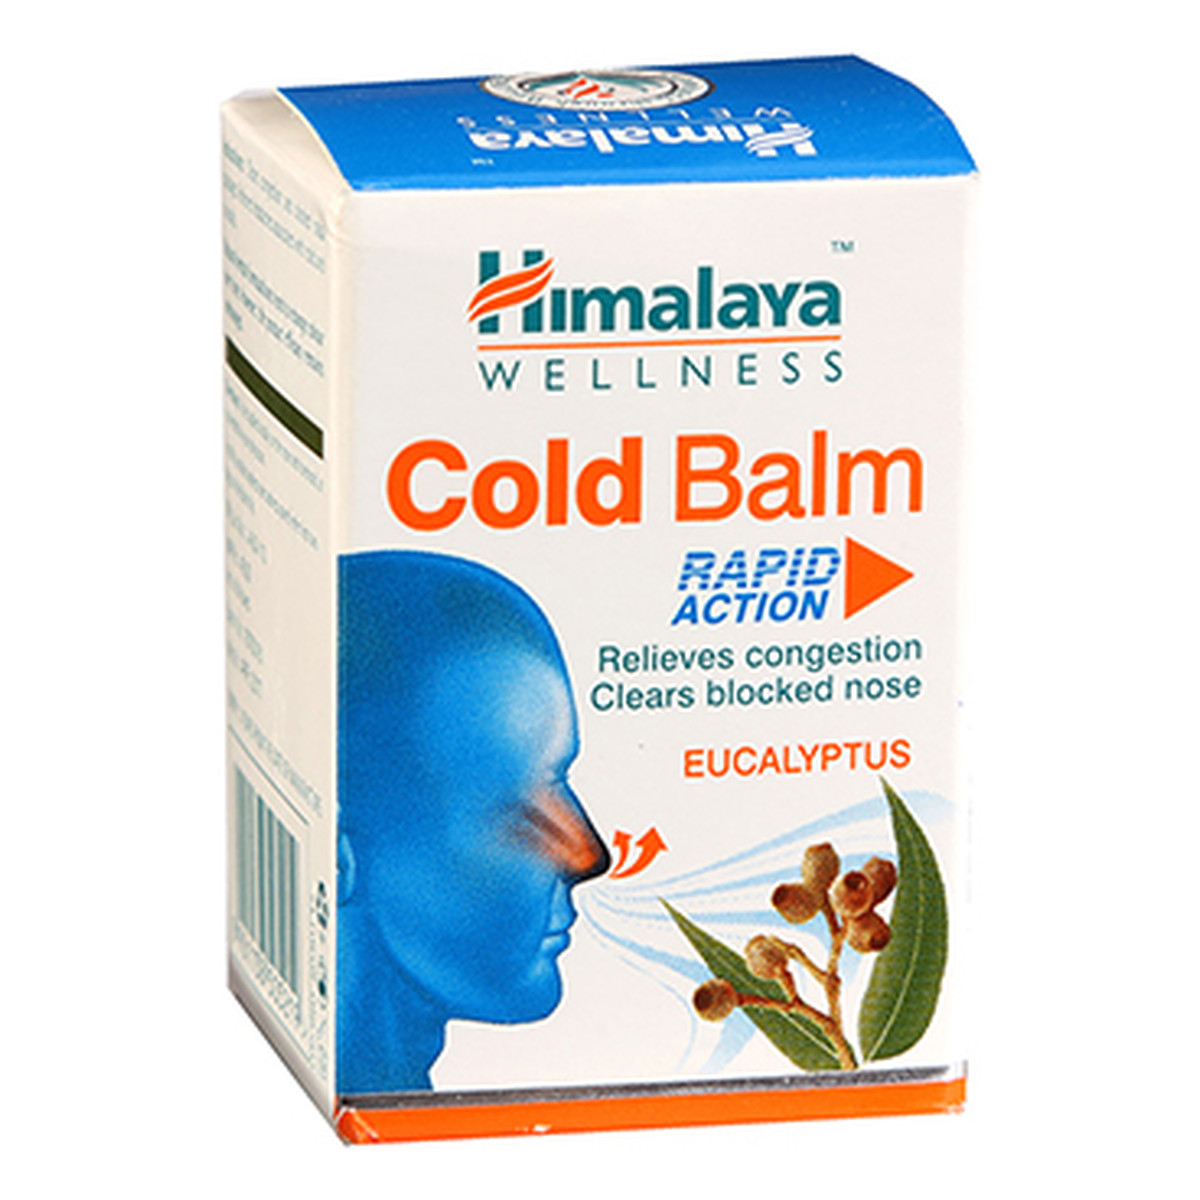 Himalaya Cold Balm Rapid Action Balsam na przeziębienie 10g